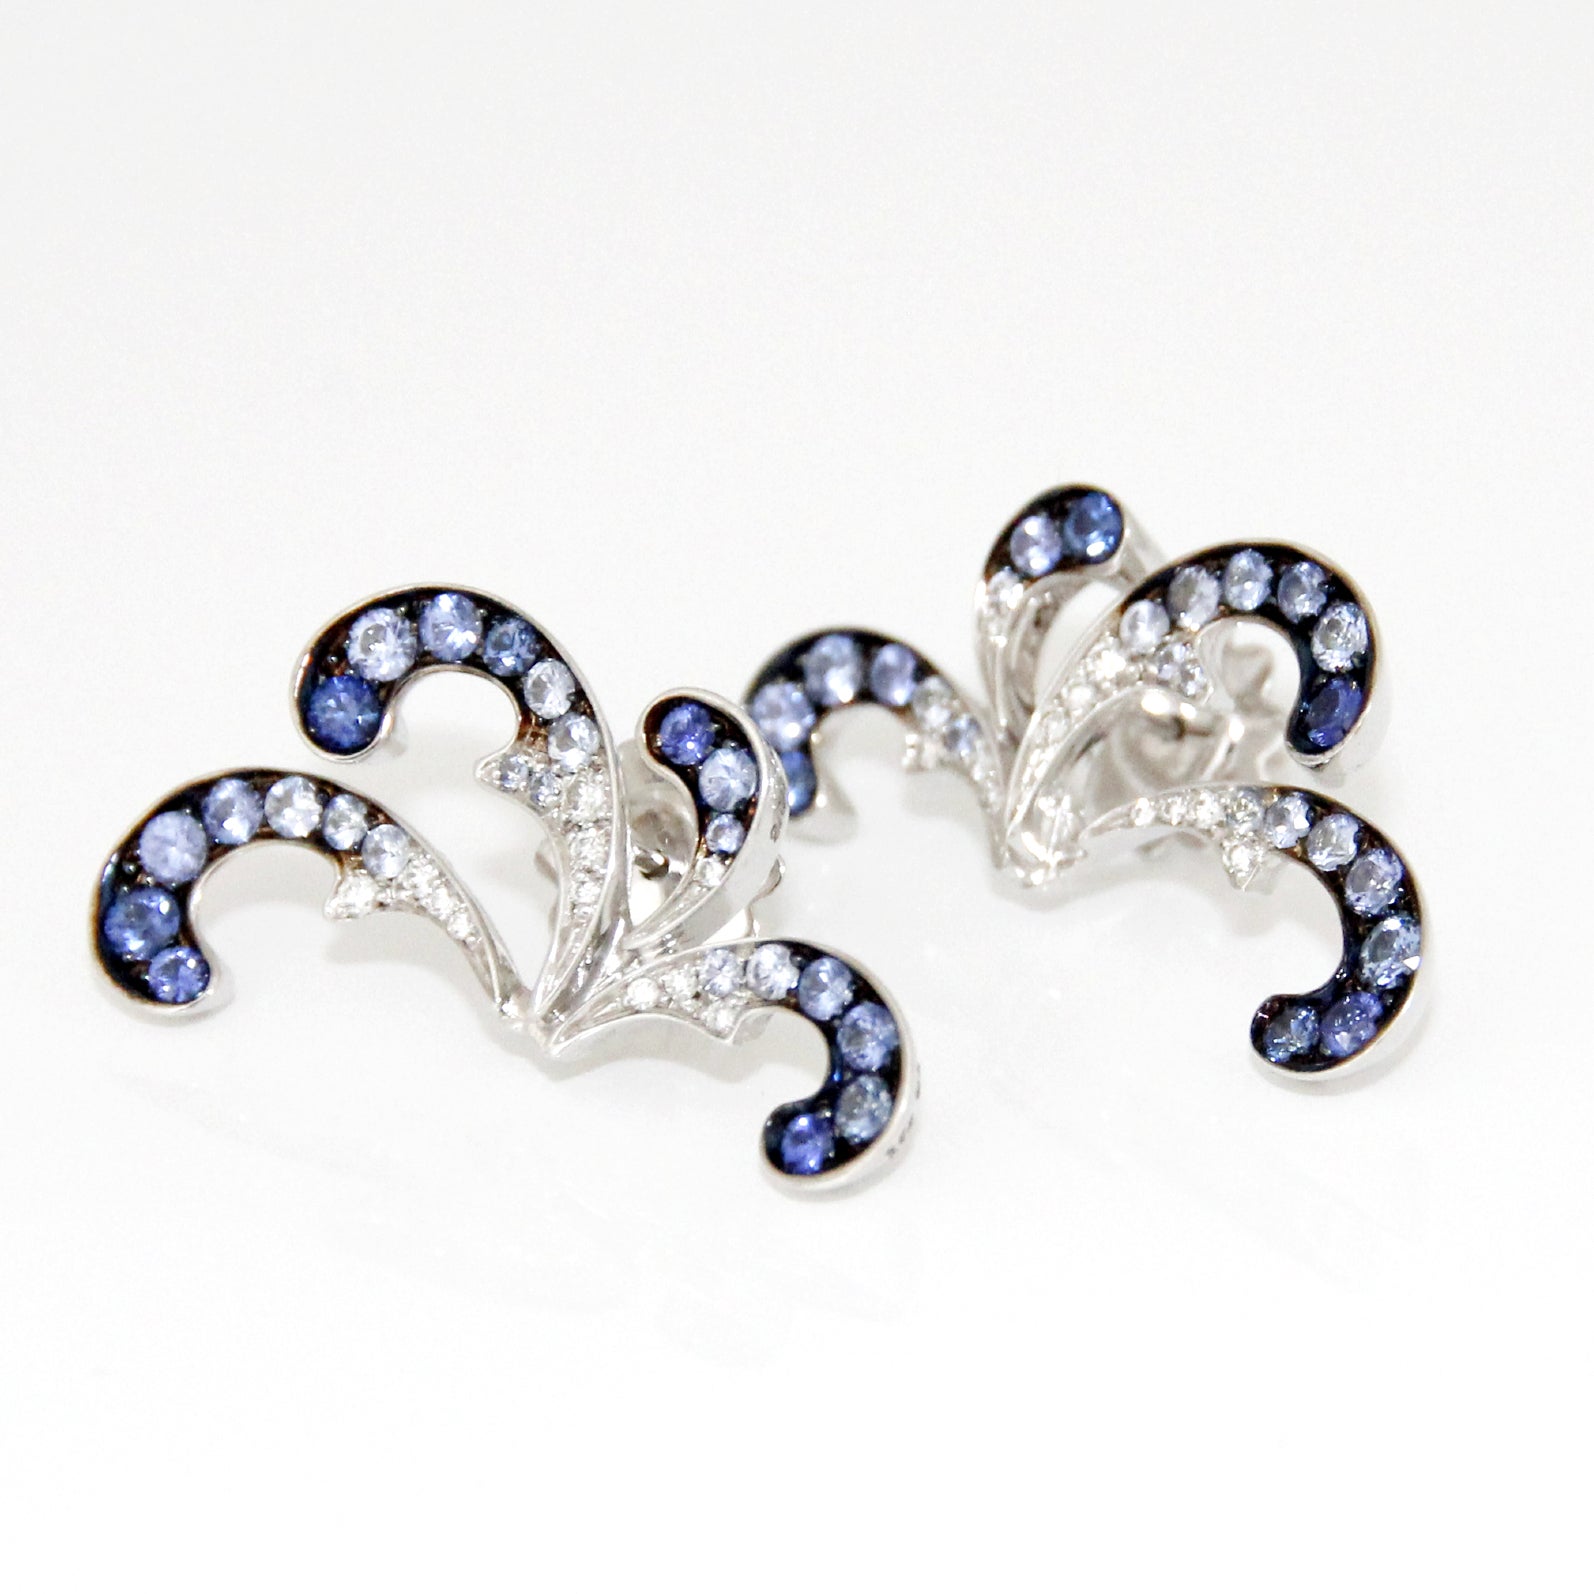 Stefan Hafner 18K White Gold, Diamonds and Blue Sapphire Earrings For Sale